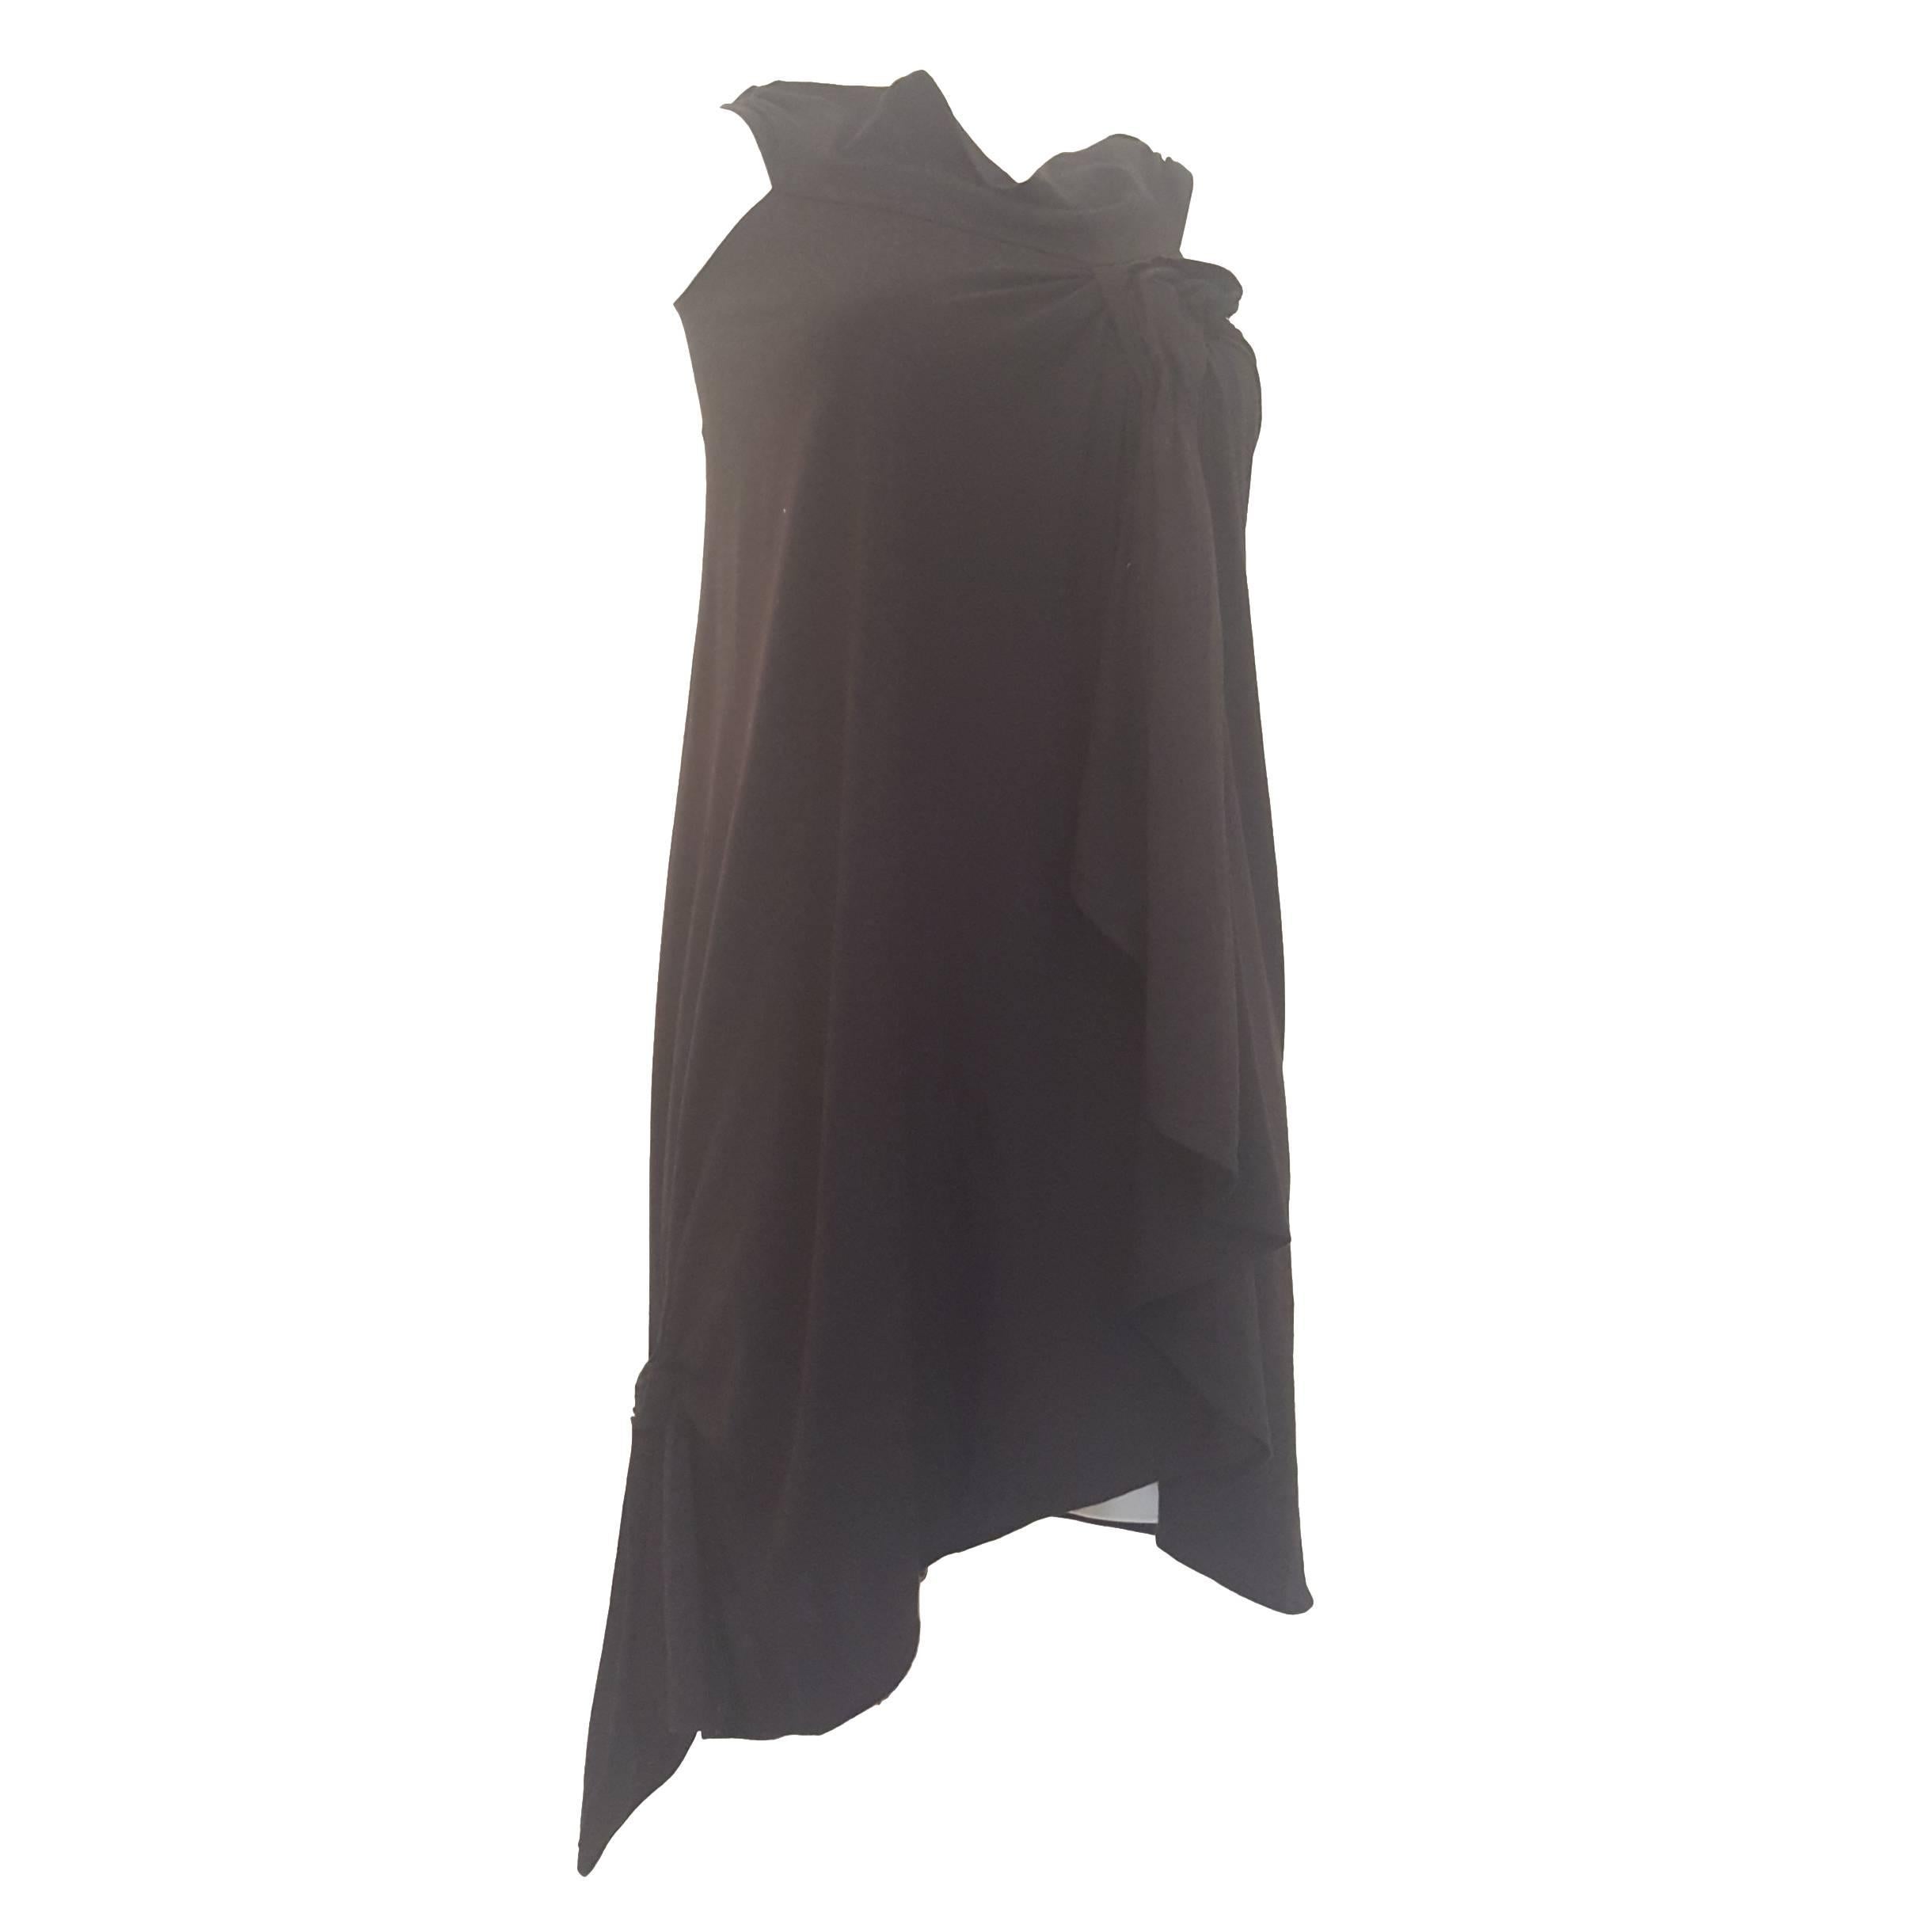 2010 Yves Saint Laurent black dress